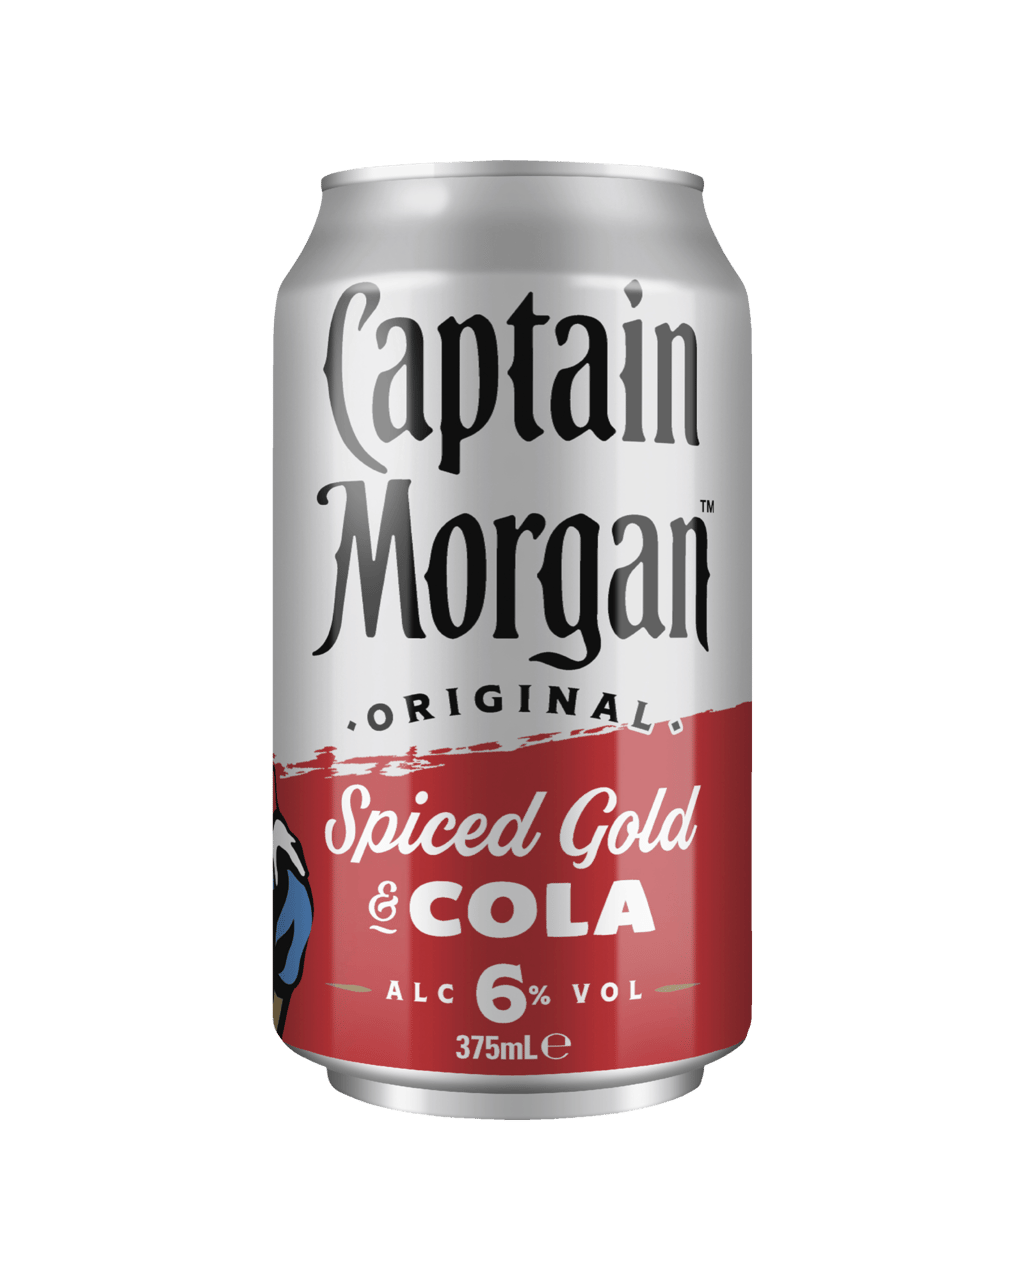 Captain Morgan Original Spiced, Fiche produit